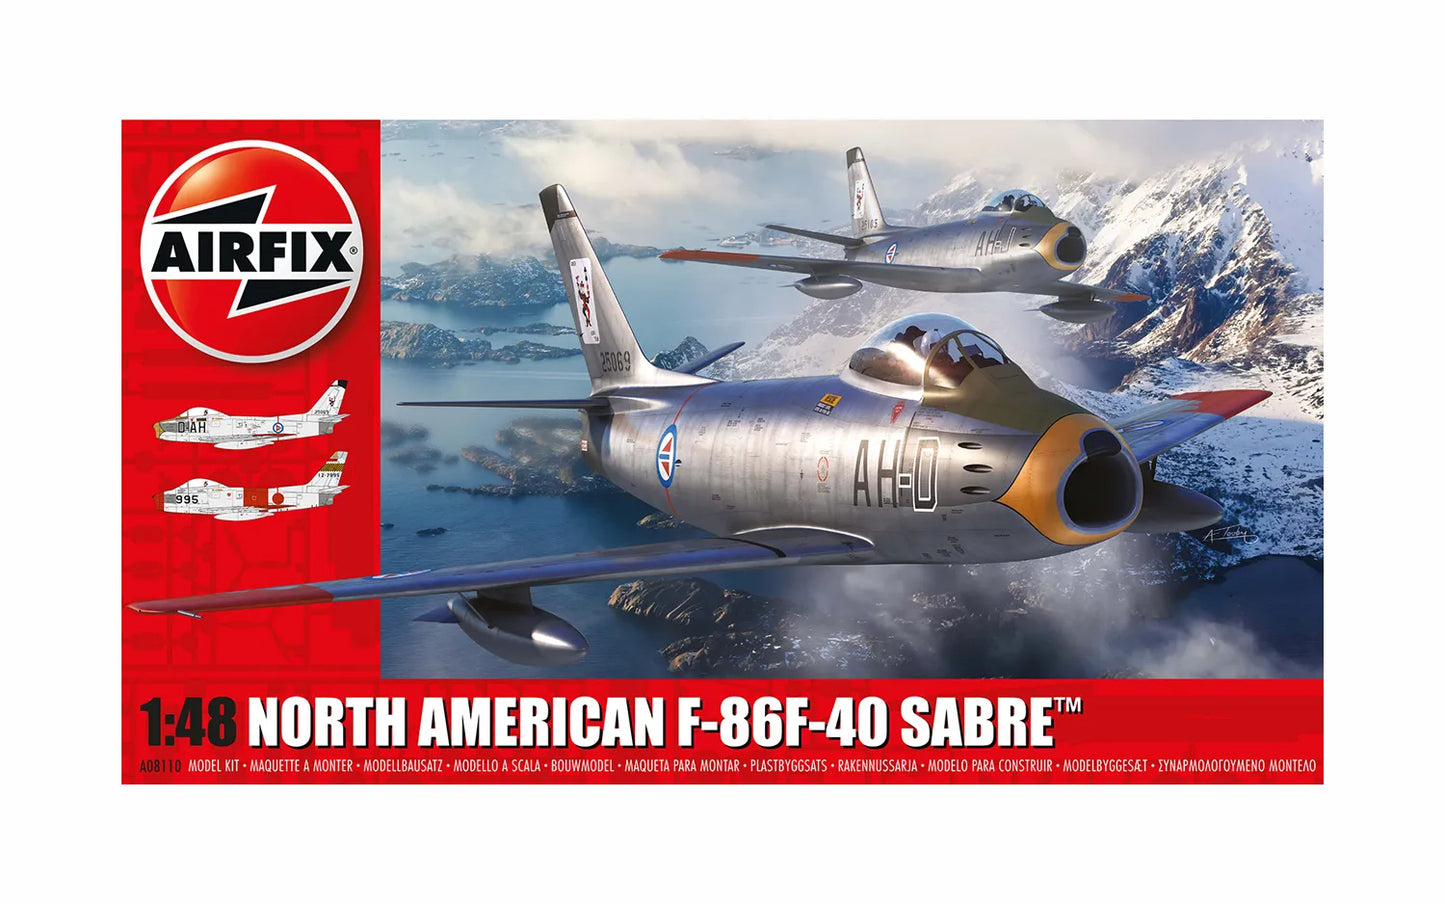 Airfix North American F-86F-40 Sabre (A08110)